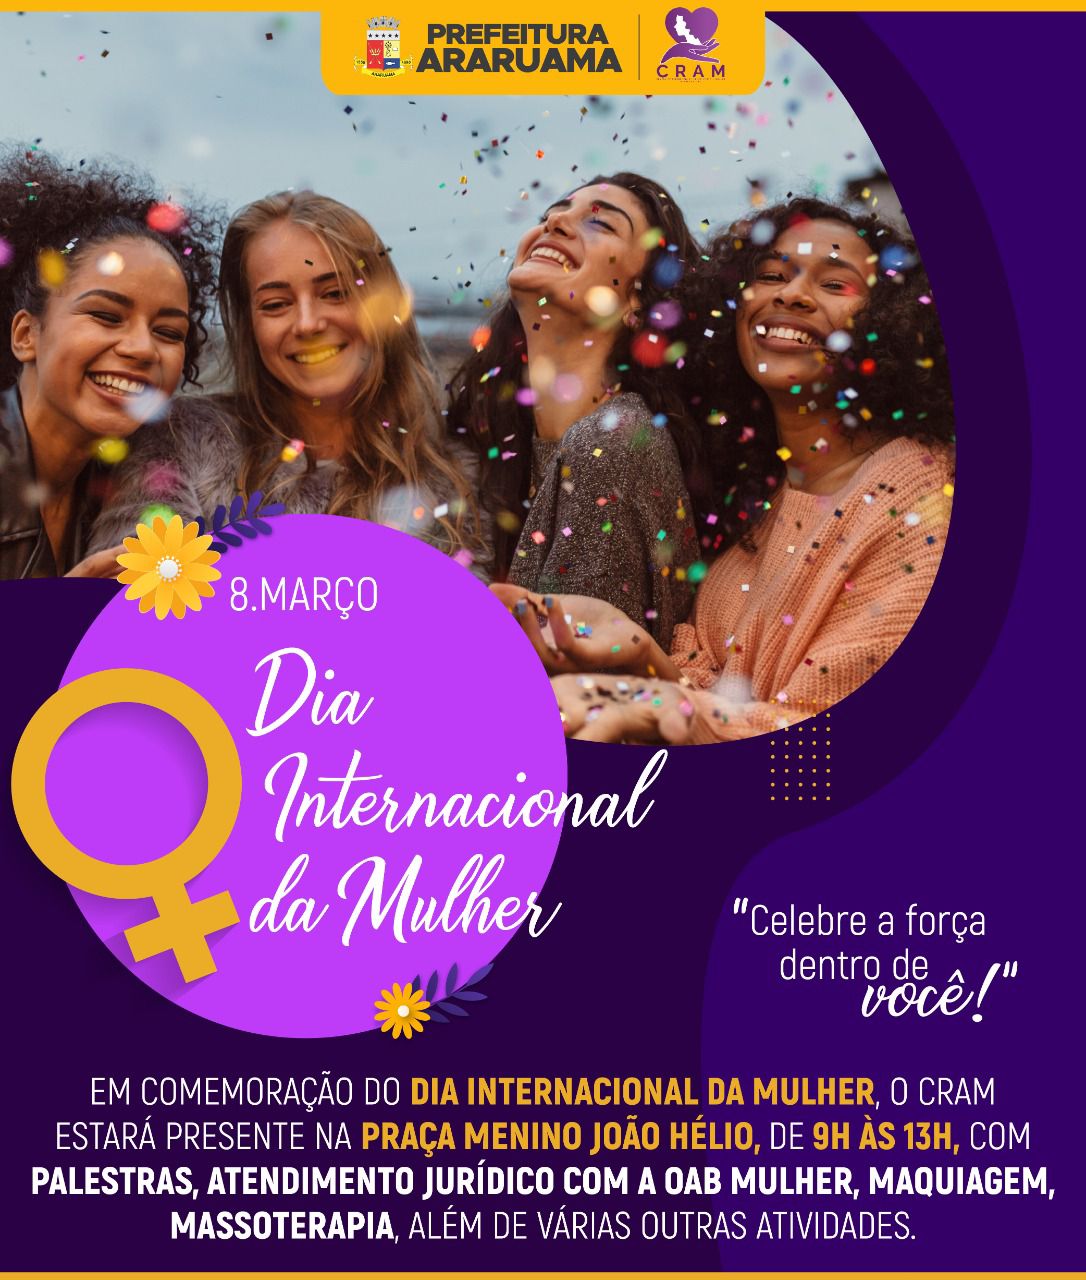 Prefeitura realiza programação especial pelo “Dia Internacional da Mulher”, que será comemorado na próxima terça-feira